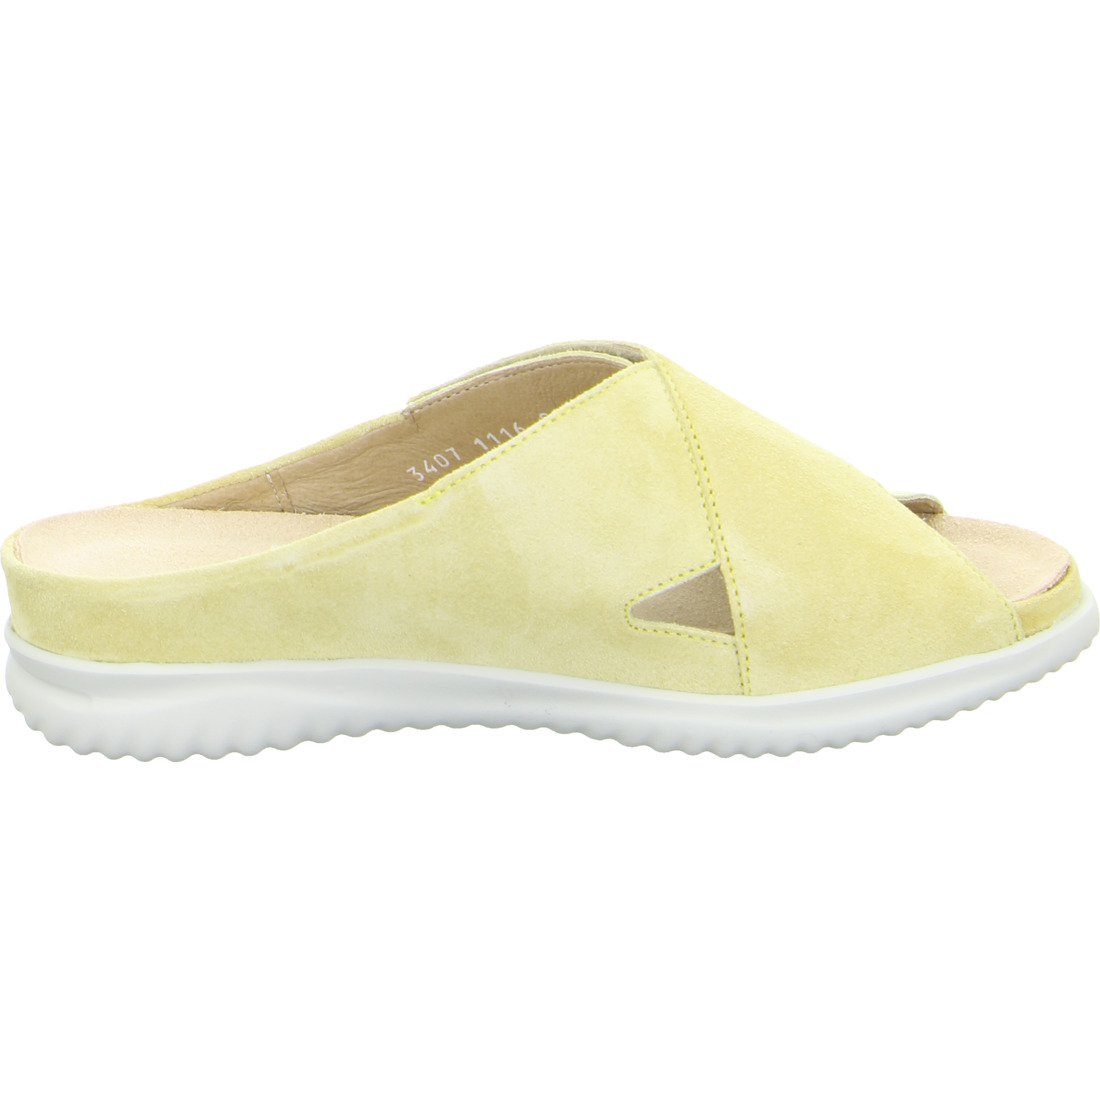 Hartjes Hartjes Schuhe, Pantolette Breeze Velours Pantolette 049378 - gelb